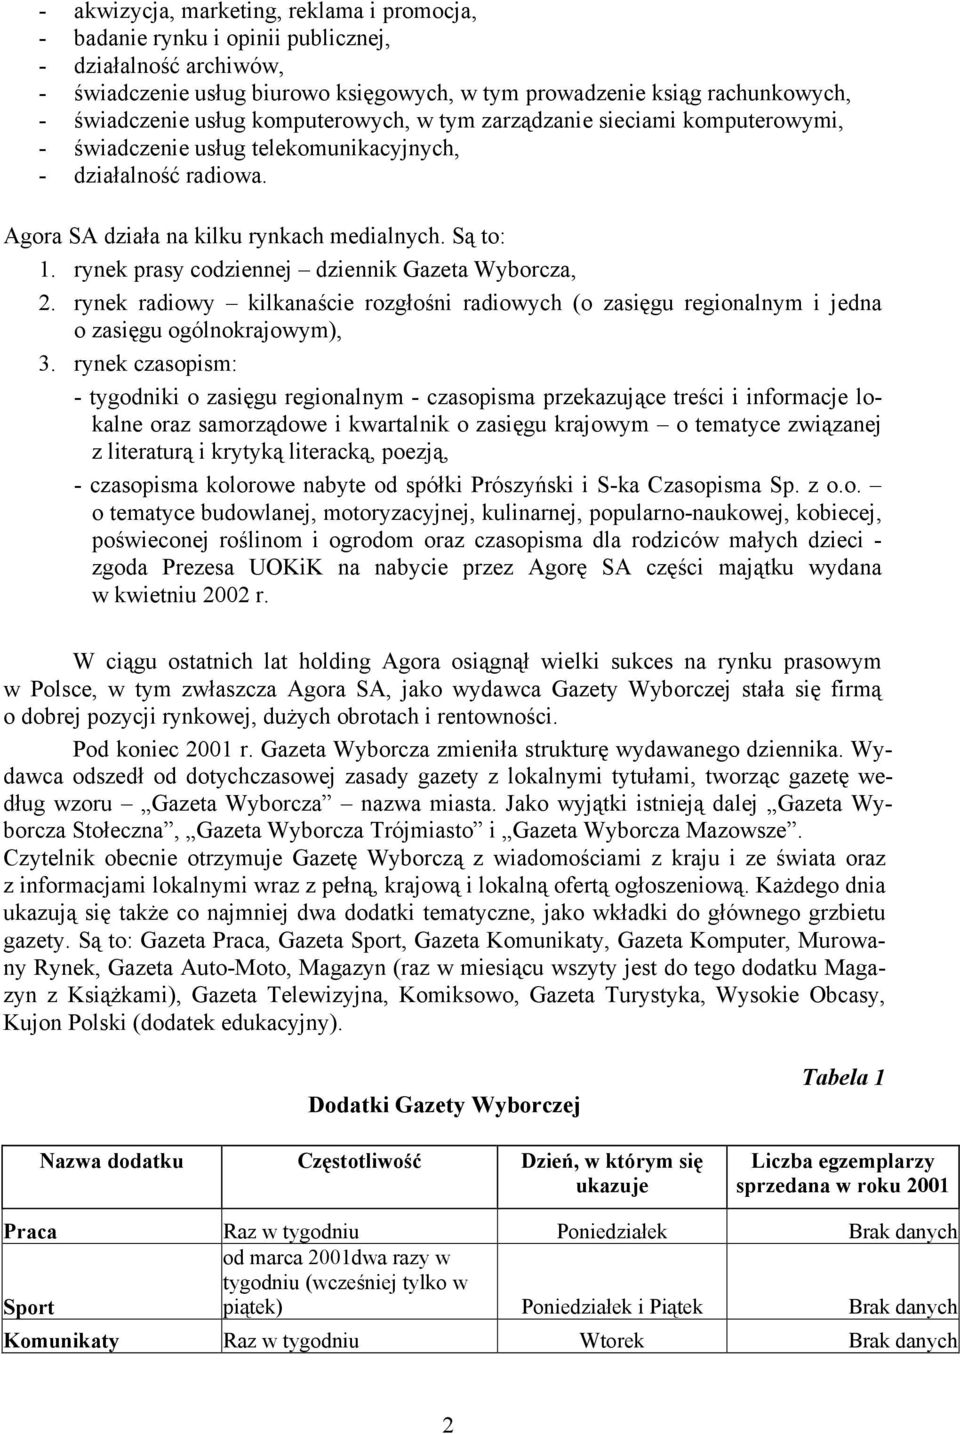 rynek prasy codziennej dziennik Gazeta Wyborcza, 2. rynek radiowy kilkanaście rozgłośni radiowych (o zasięgu regionalnym i jedna o zasięgu ogólnokrajowym), 3.